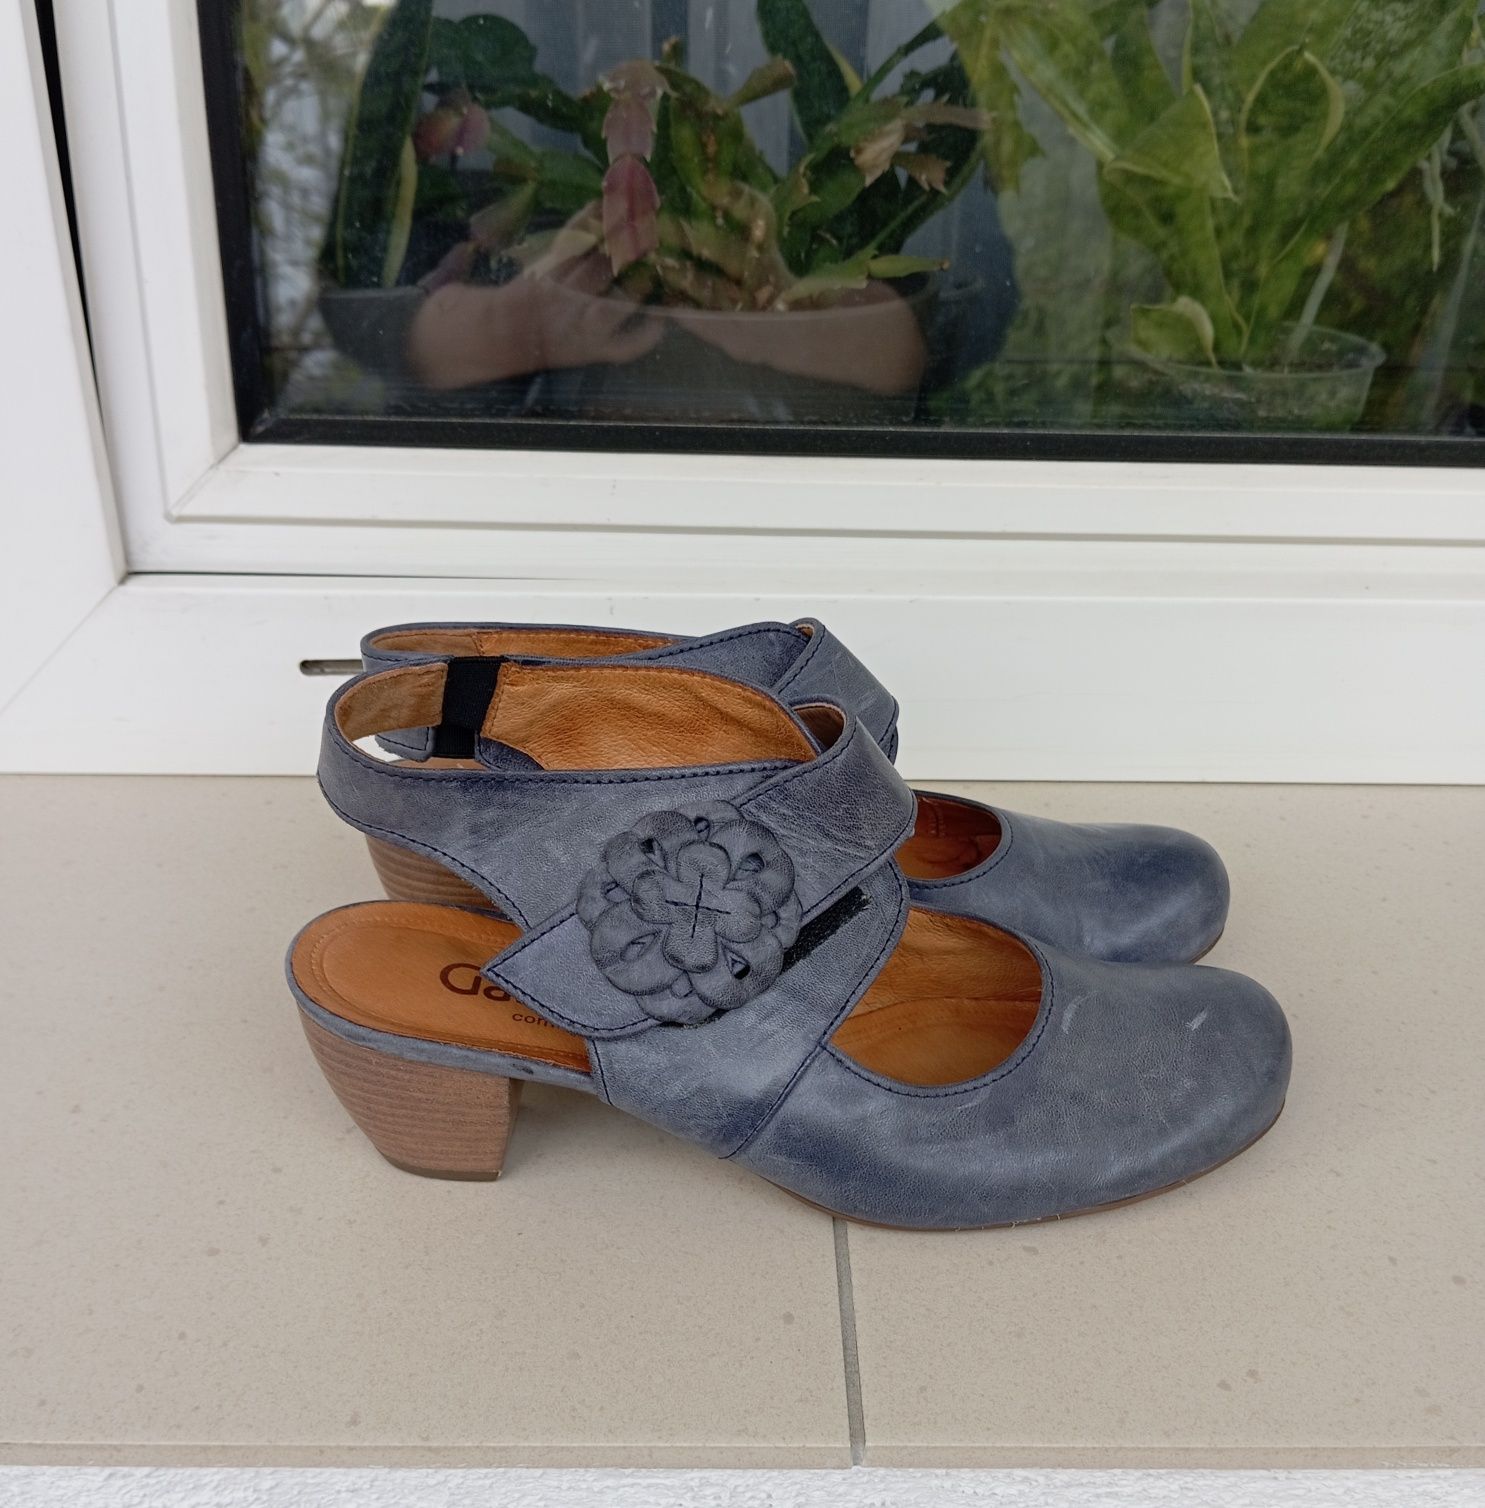 Szaro-niebieskie skórzane buty Gabor, rozmiar 5,5, zapinane na rzepy.